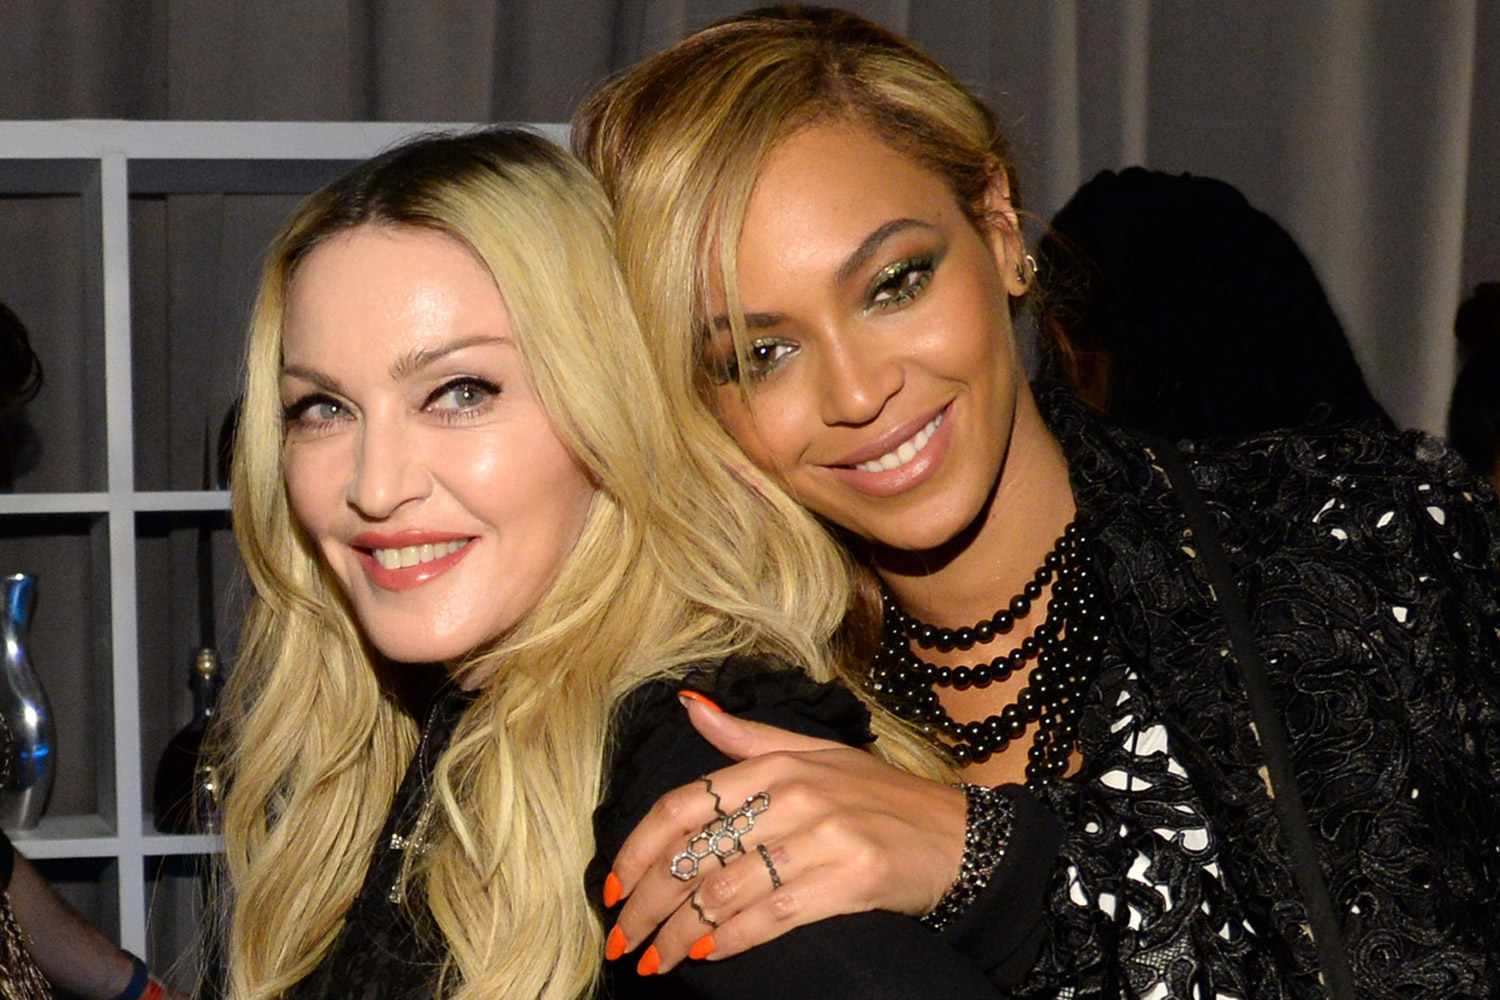 Madonna and Beyoncé